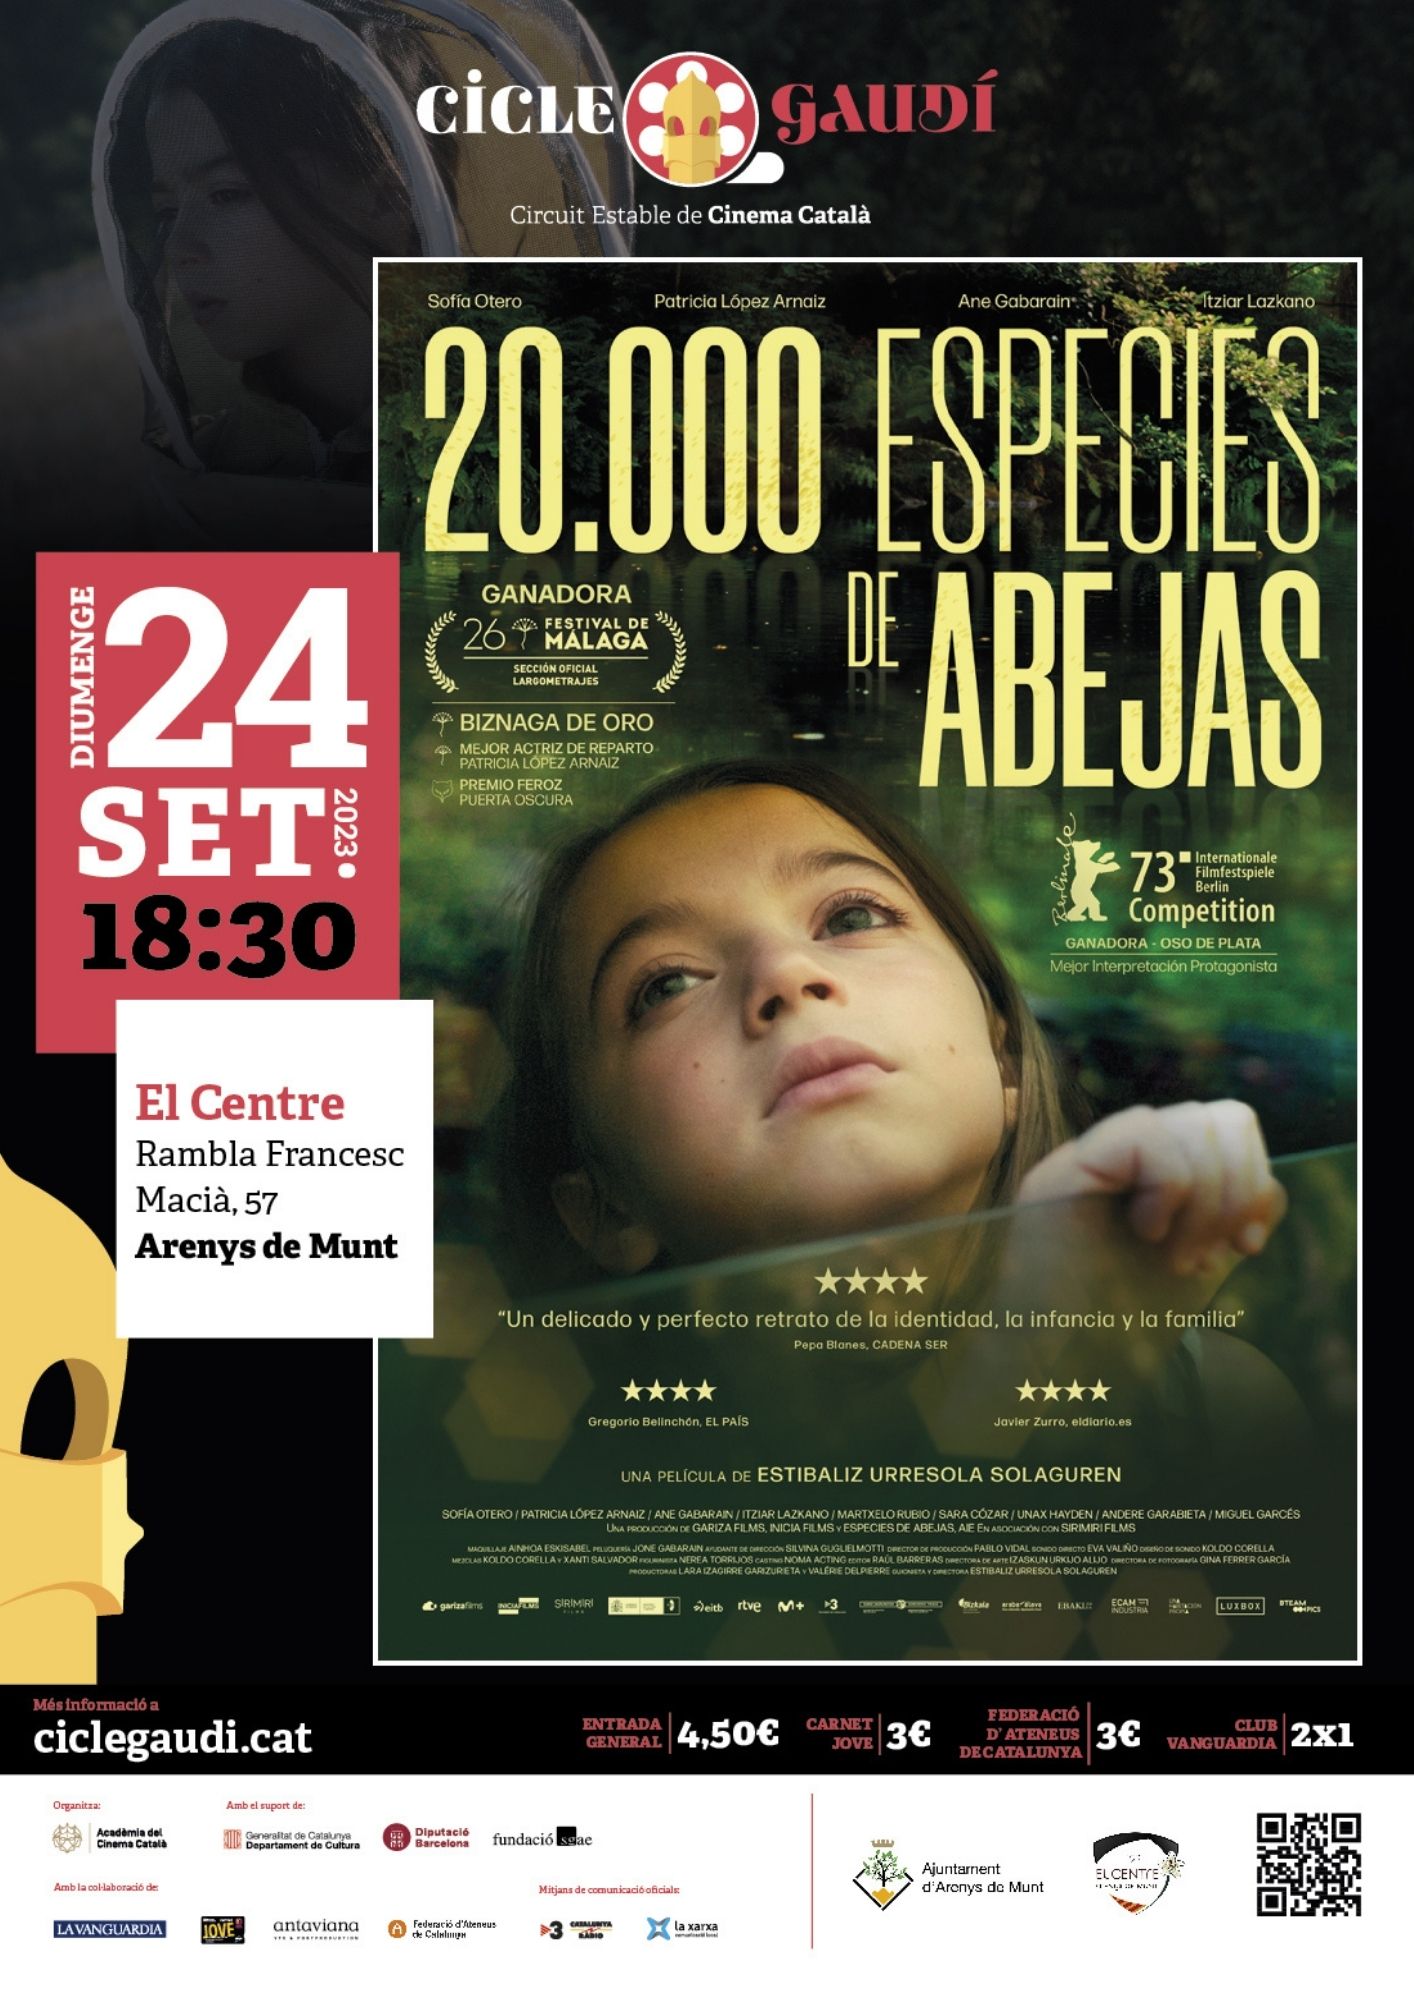 Cinema Cicle Gaudí: 20.000 especies de abejas